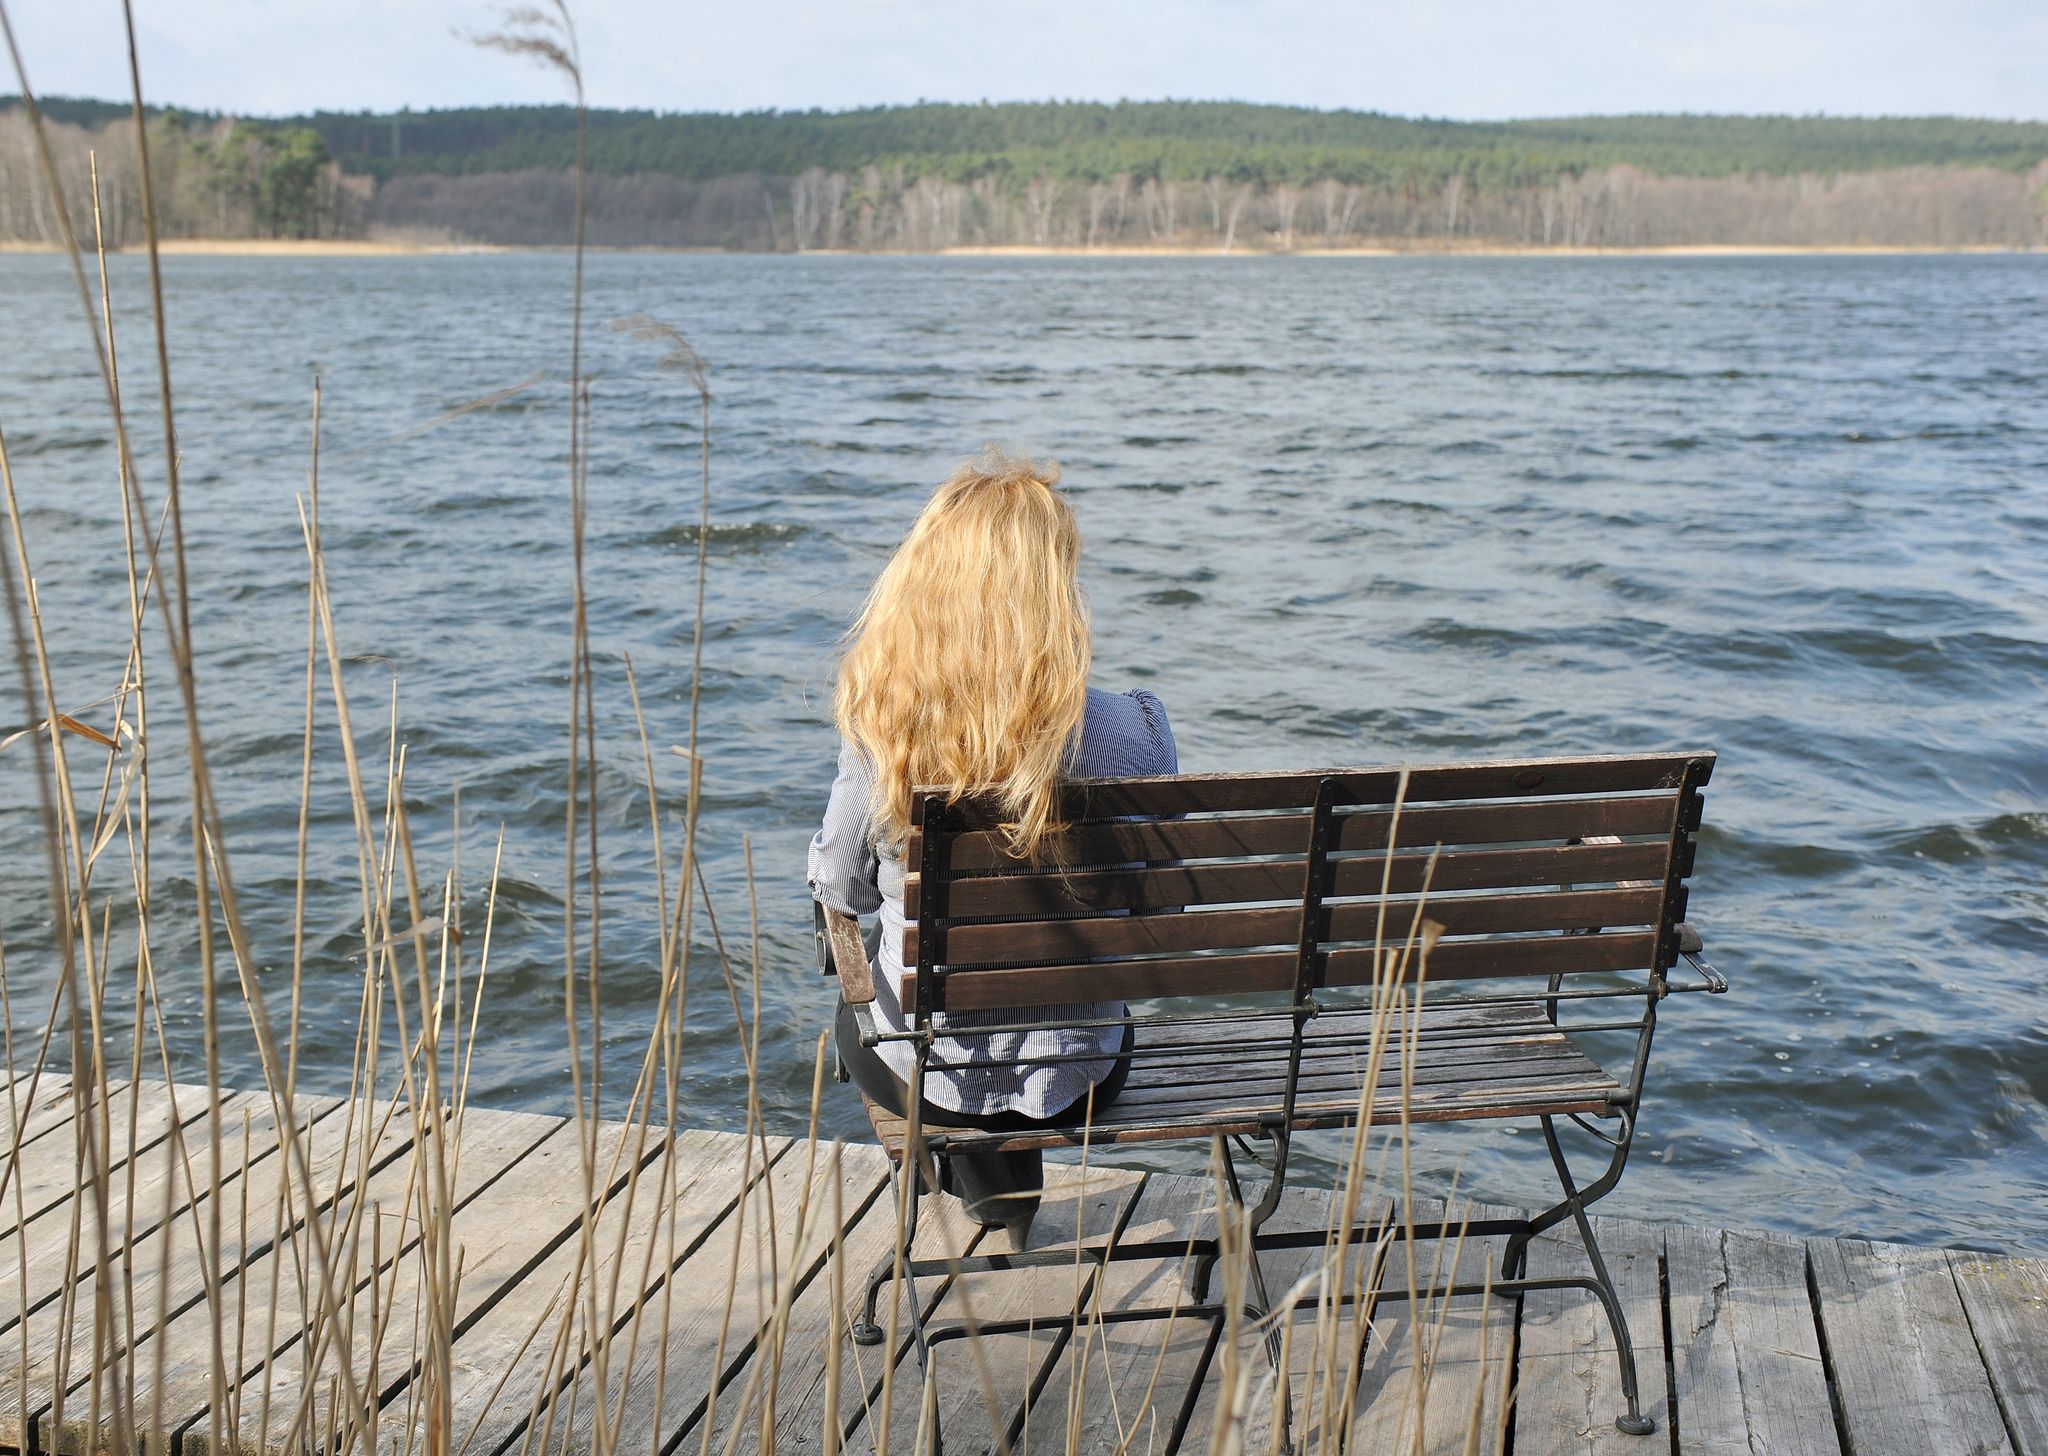 Einsamkeit kann krank machen. Oft treten seelische Probleme wie Depressionen, Angstzustände oder Suchtkrankheiten auf.